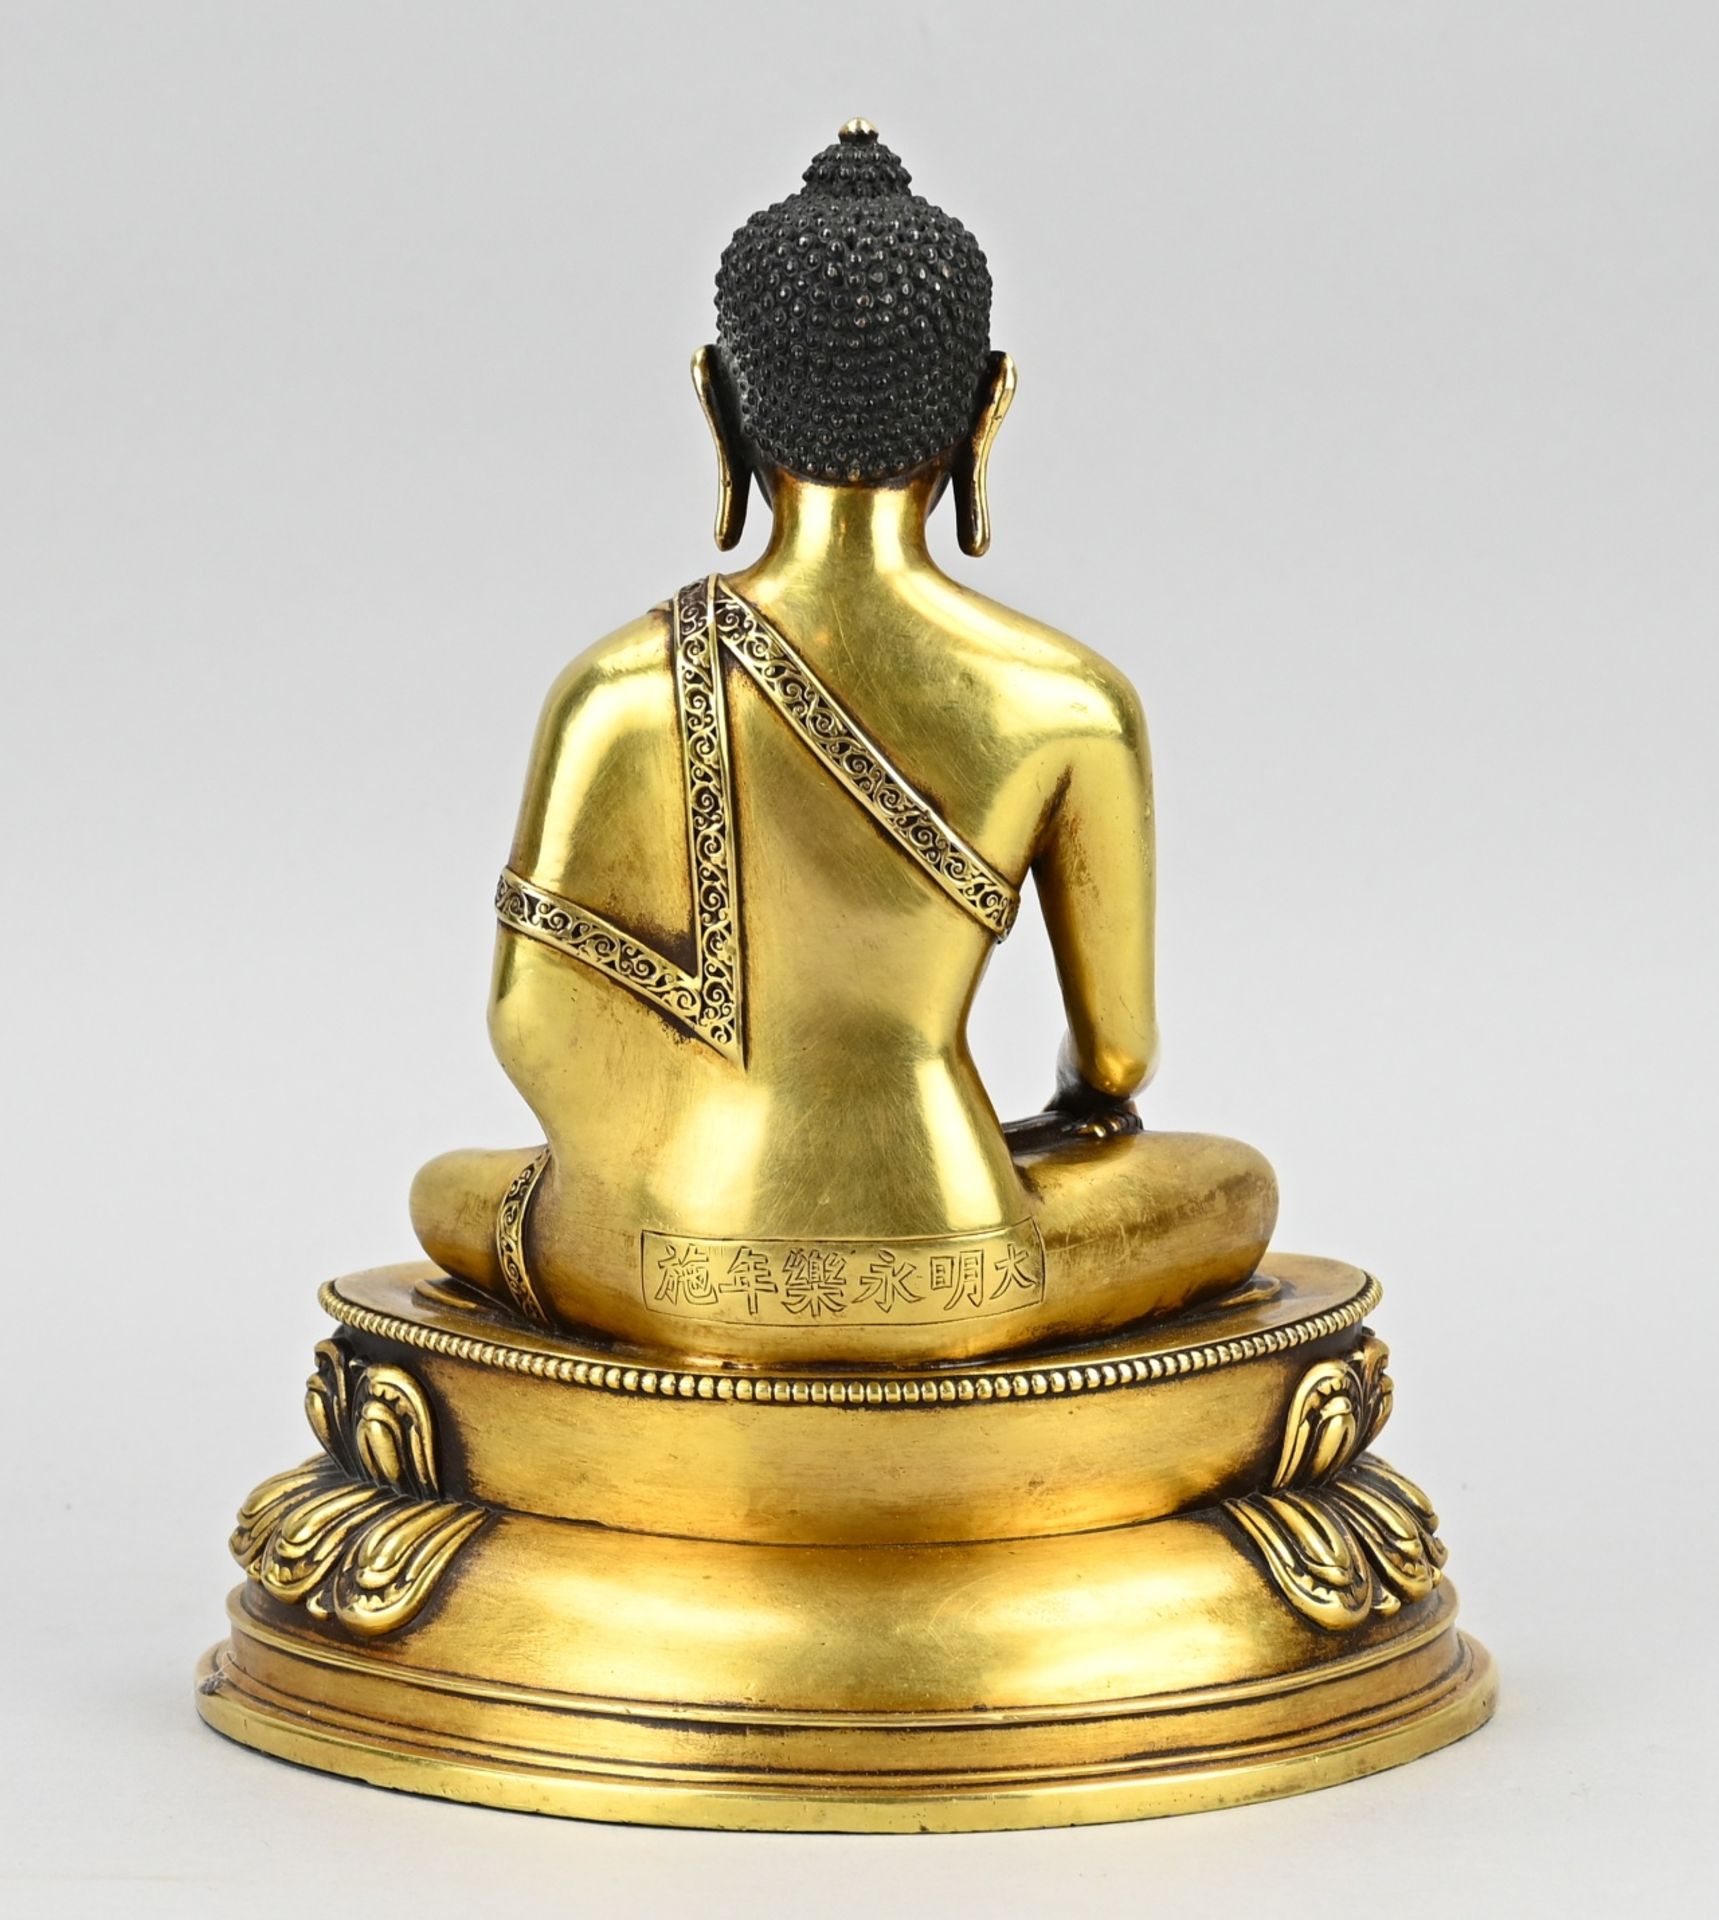 Chinese bronze Buddha, H 23 cm. - Image 2 of 3